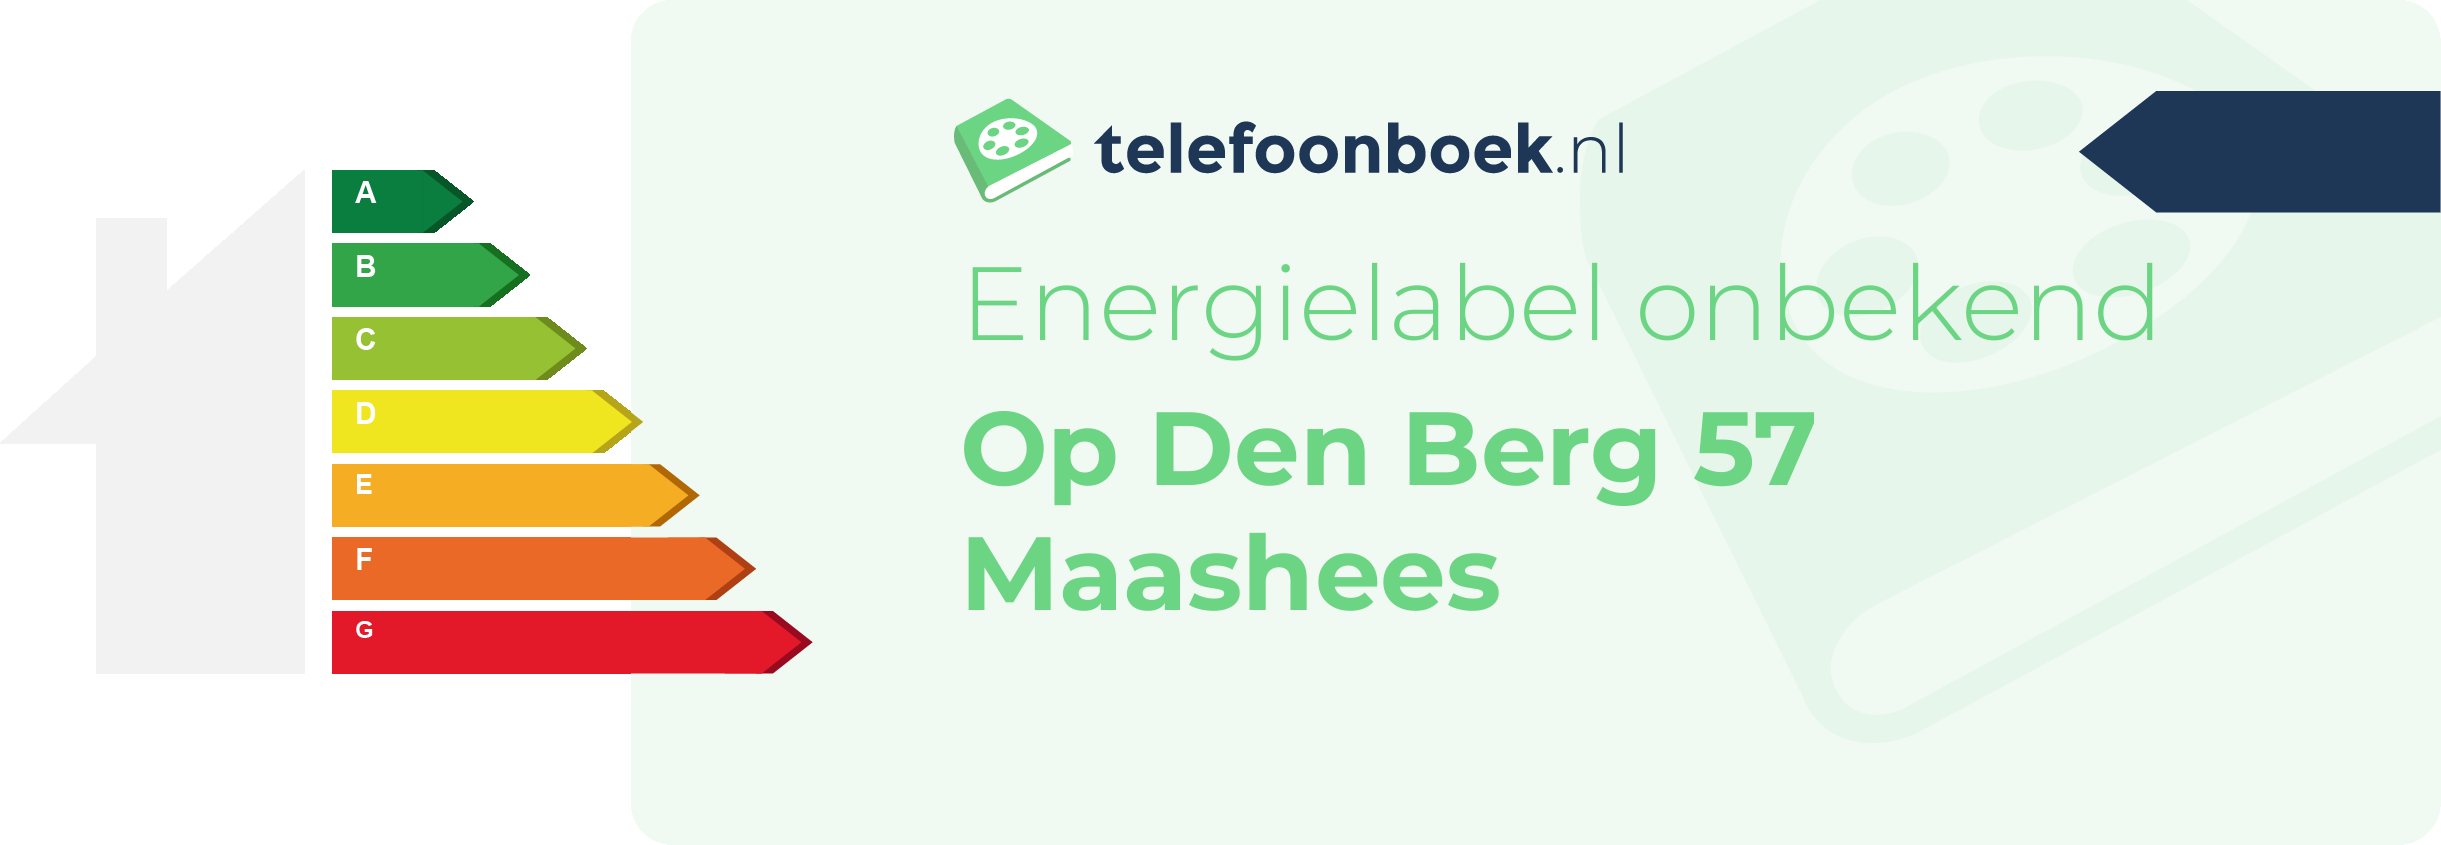 Energielabel Op Den Berg 57 Maashees